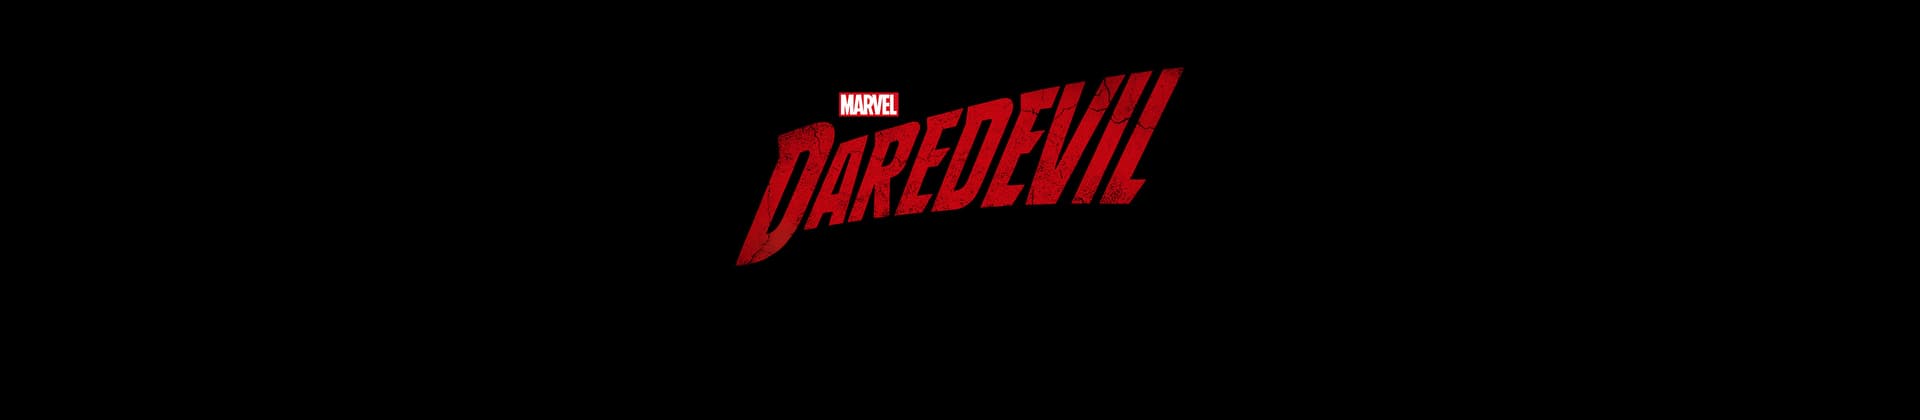 Marvel's Daredevil Season 3